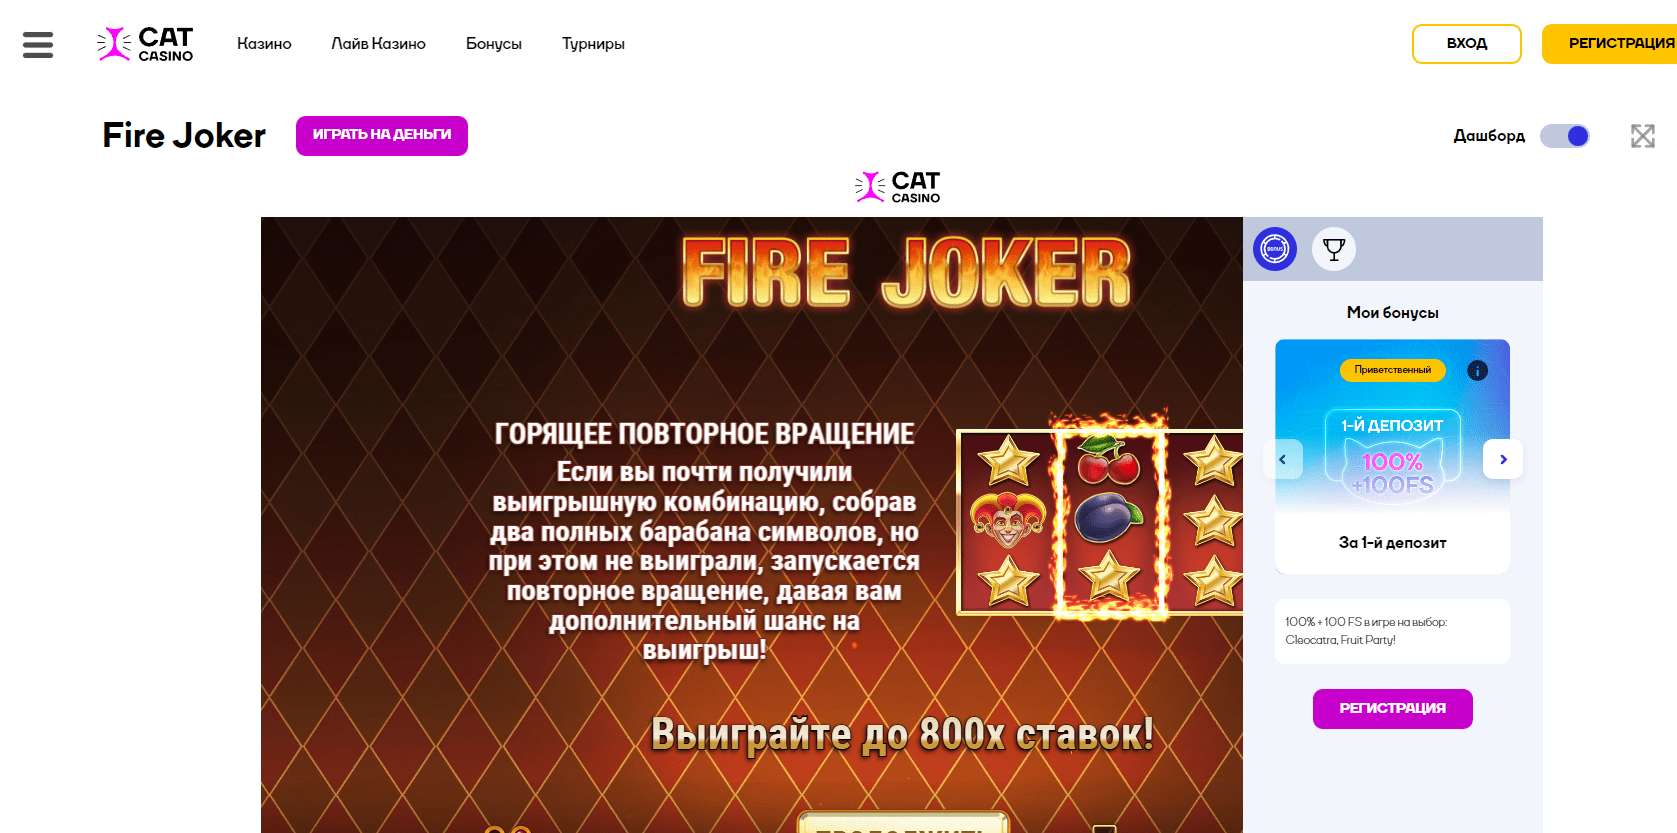 Fire joker online no Cat casino